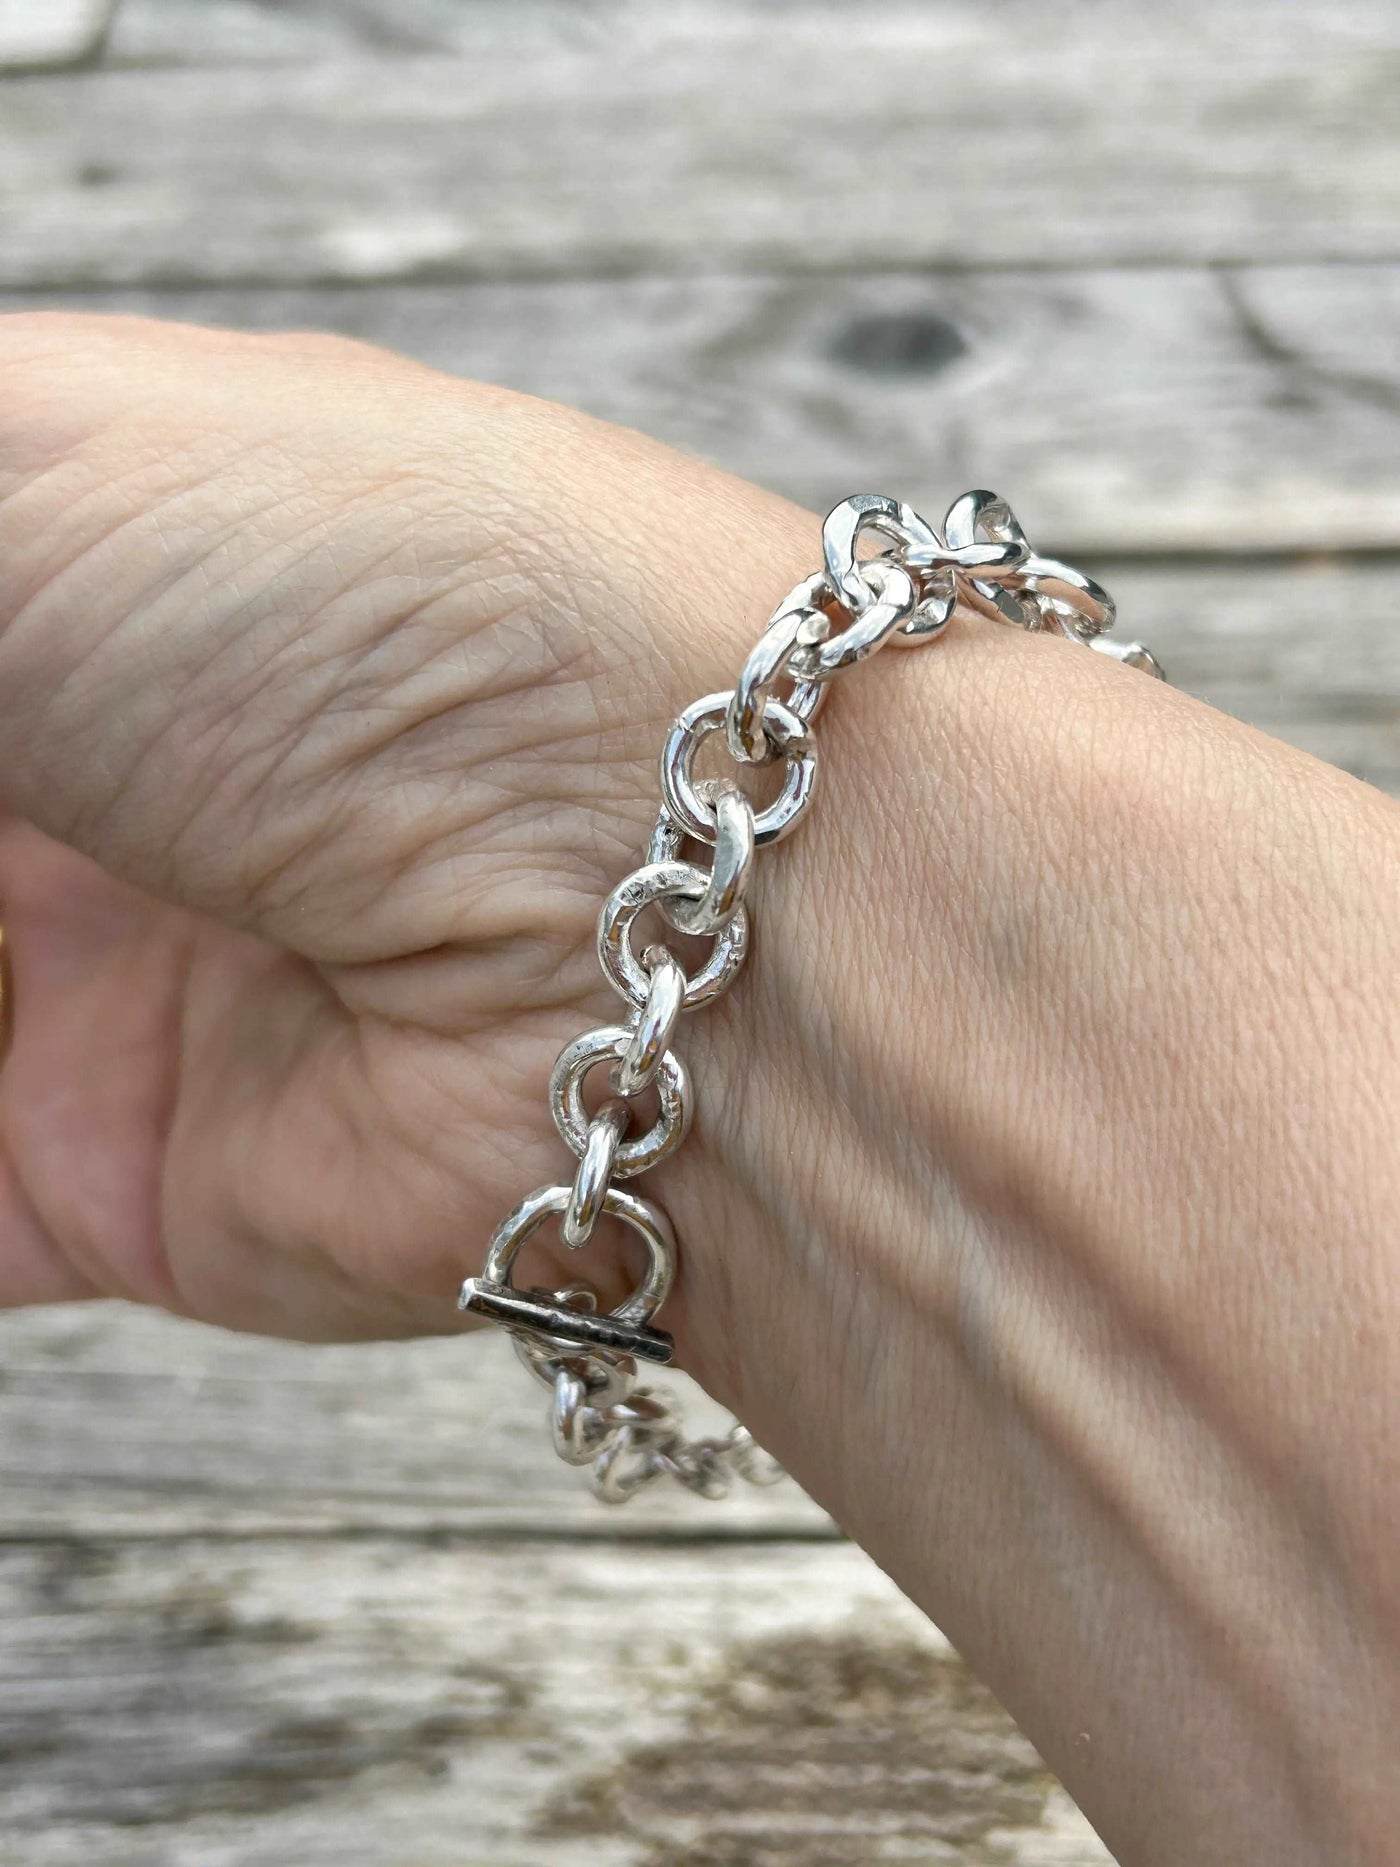 Sterling silver charm bracelet LaVidaLoca